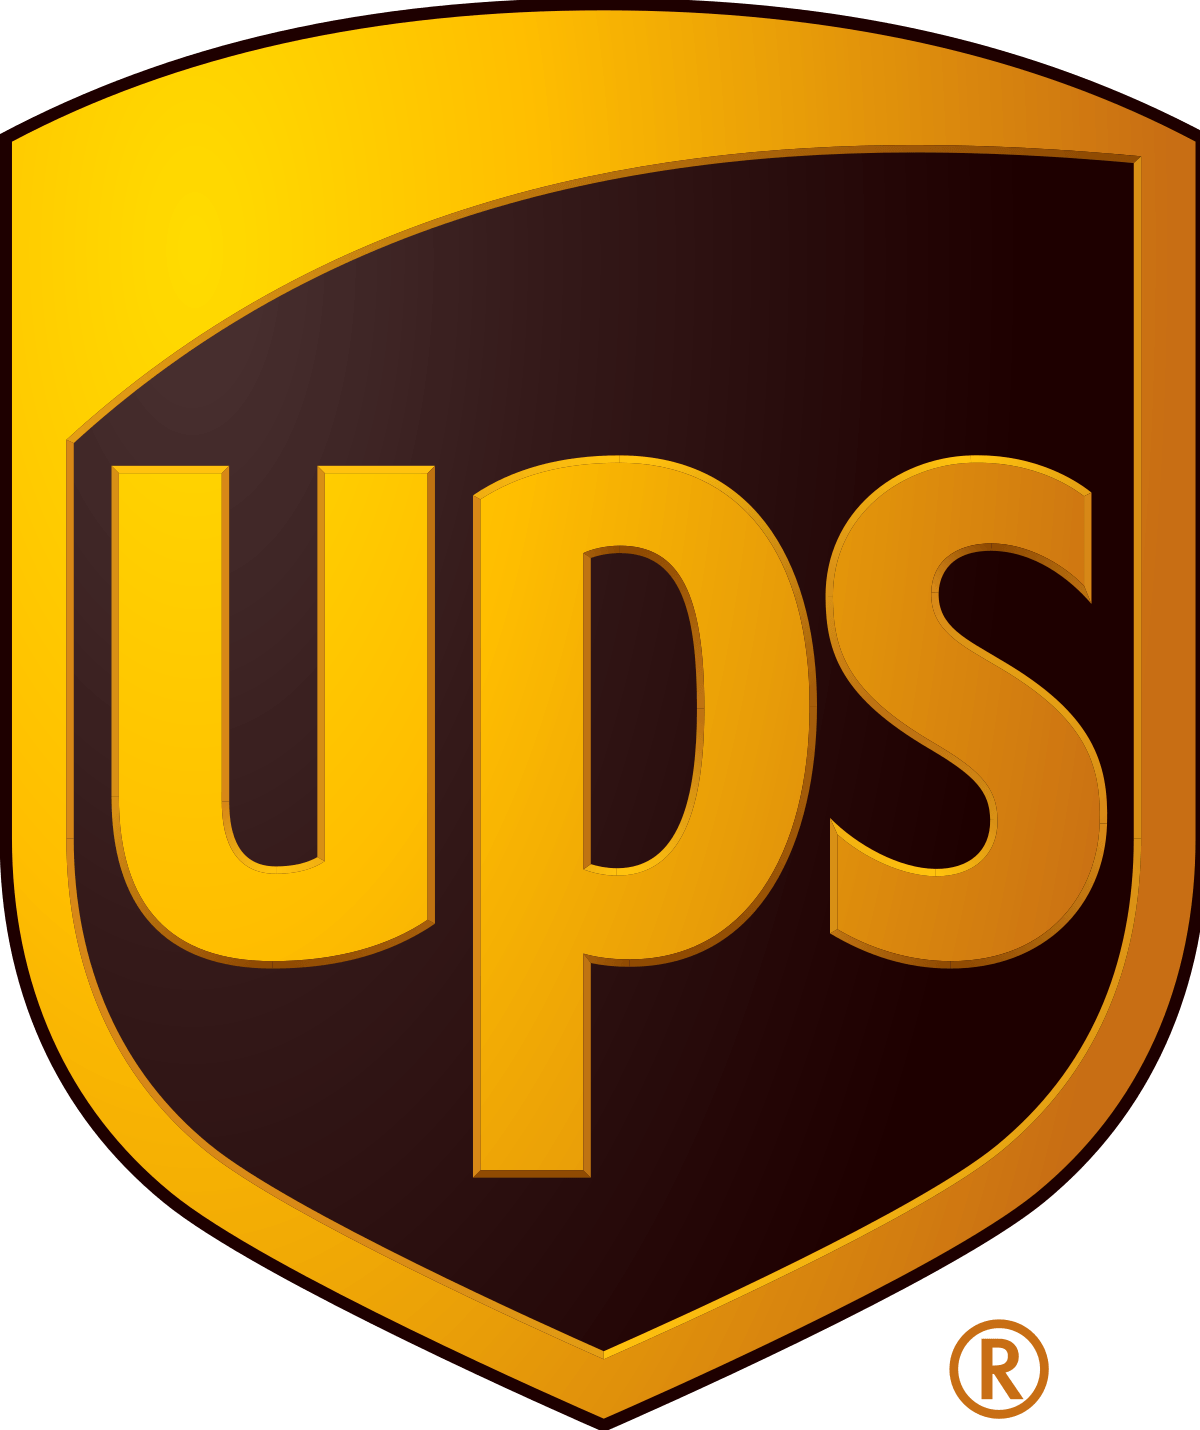 Major Vehicle Manufacturer Shield Logo - United Parcel Service